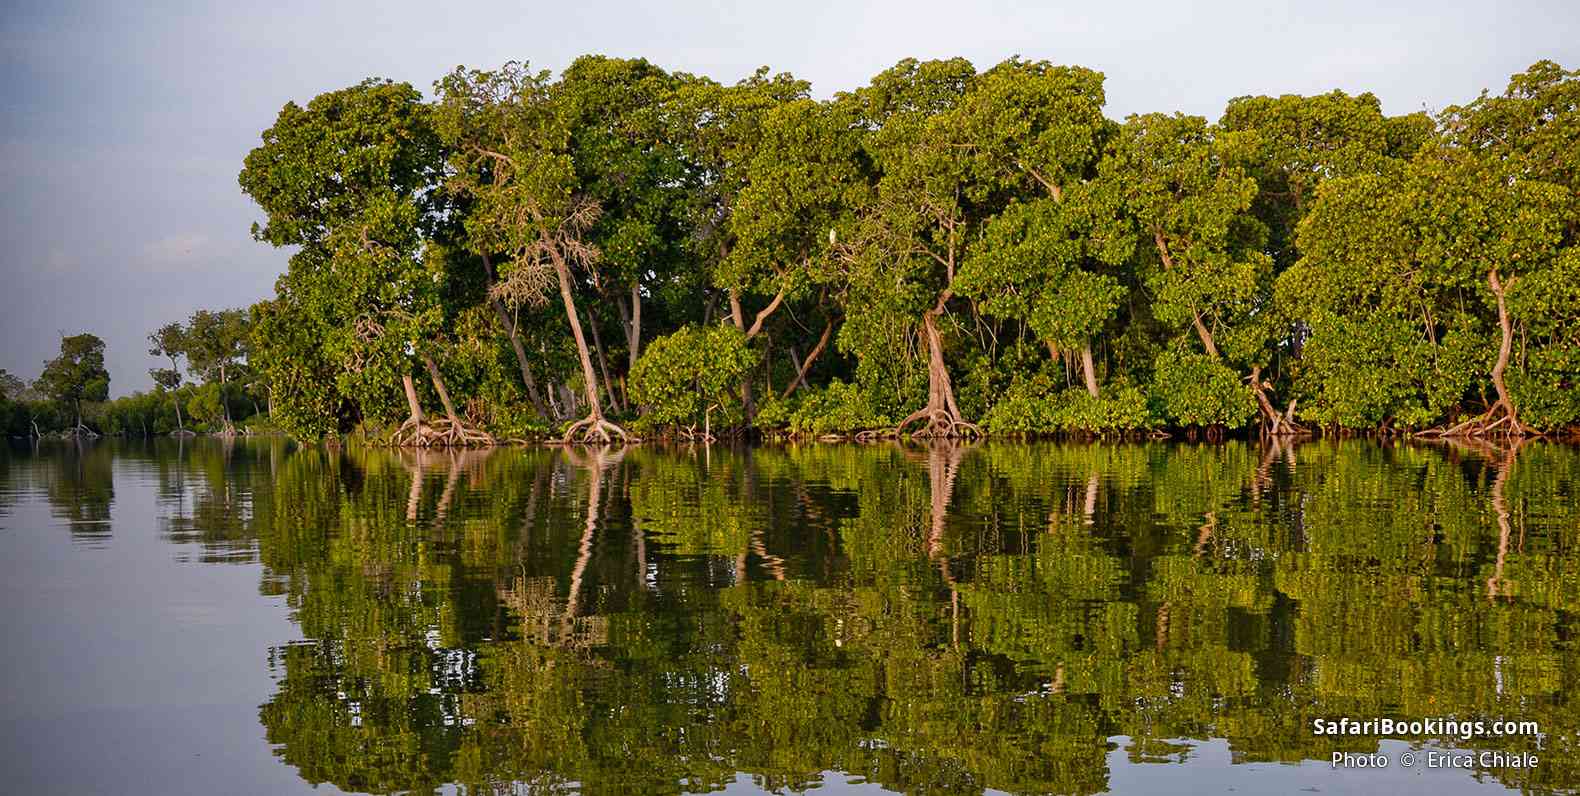 Kayaking between mangroves in the Mida Creek area